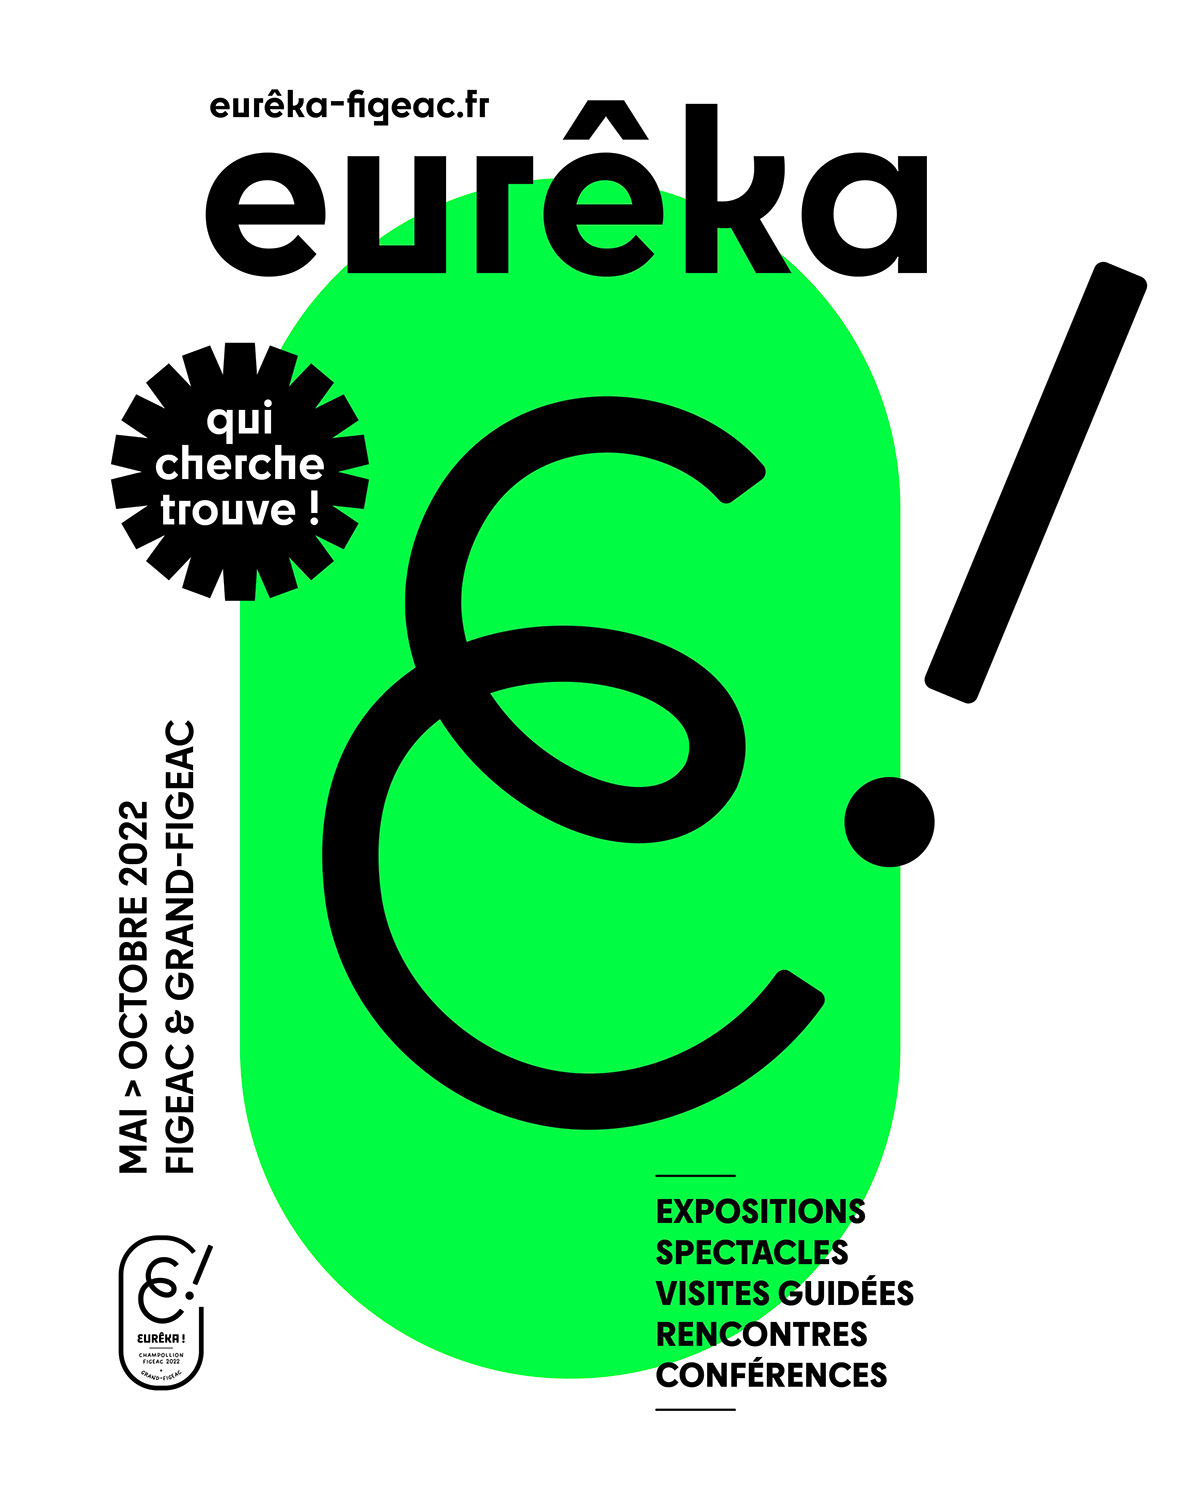 champollion charte graphique Eureka Figeac identité visuelle logo